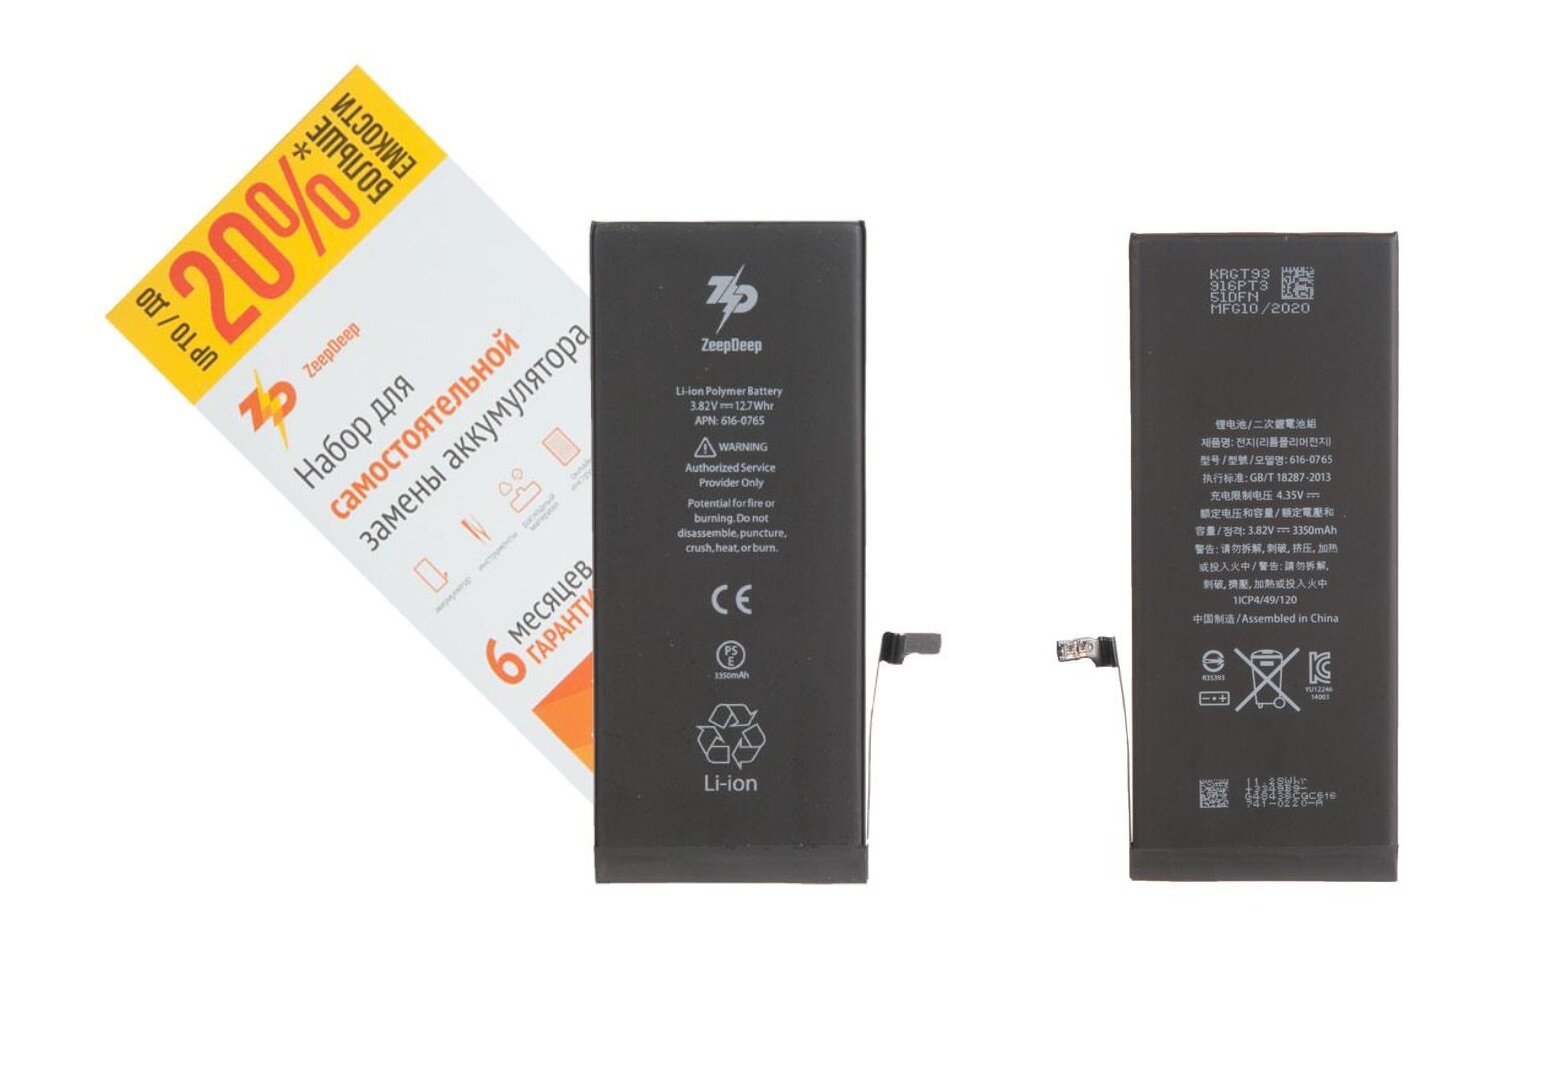 Battery / Аккумулятор iPhone 6 plus +13% увеличенной емкости в наборе ZeepDeep: батарея 3350 mAh, набор инструментов, монтажные стикеры, пошаговая инструкция